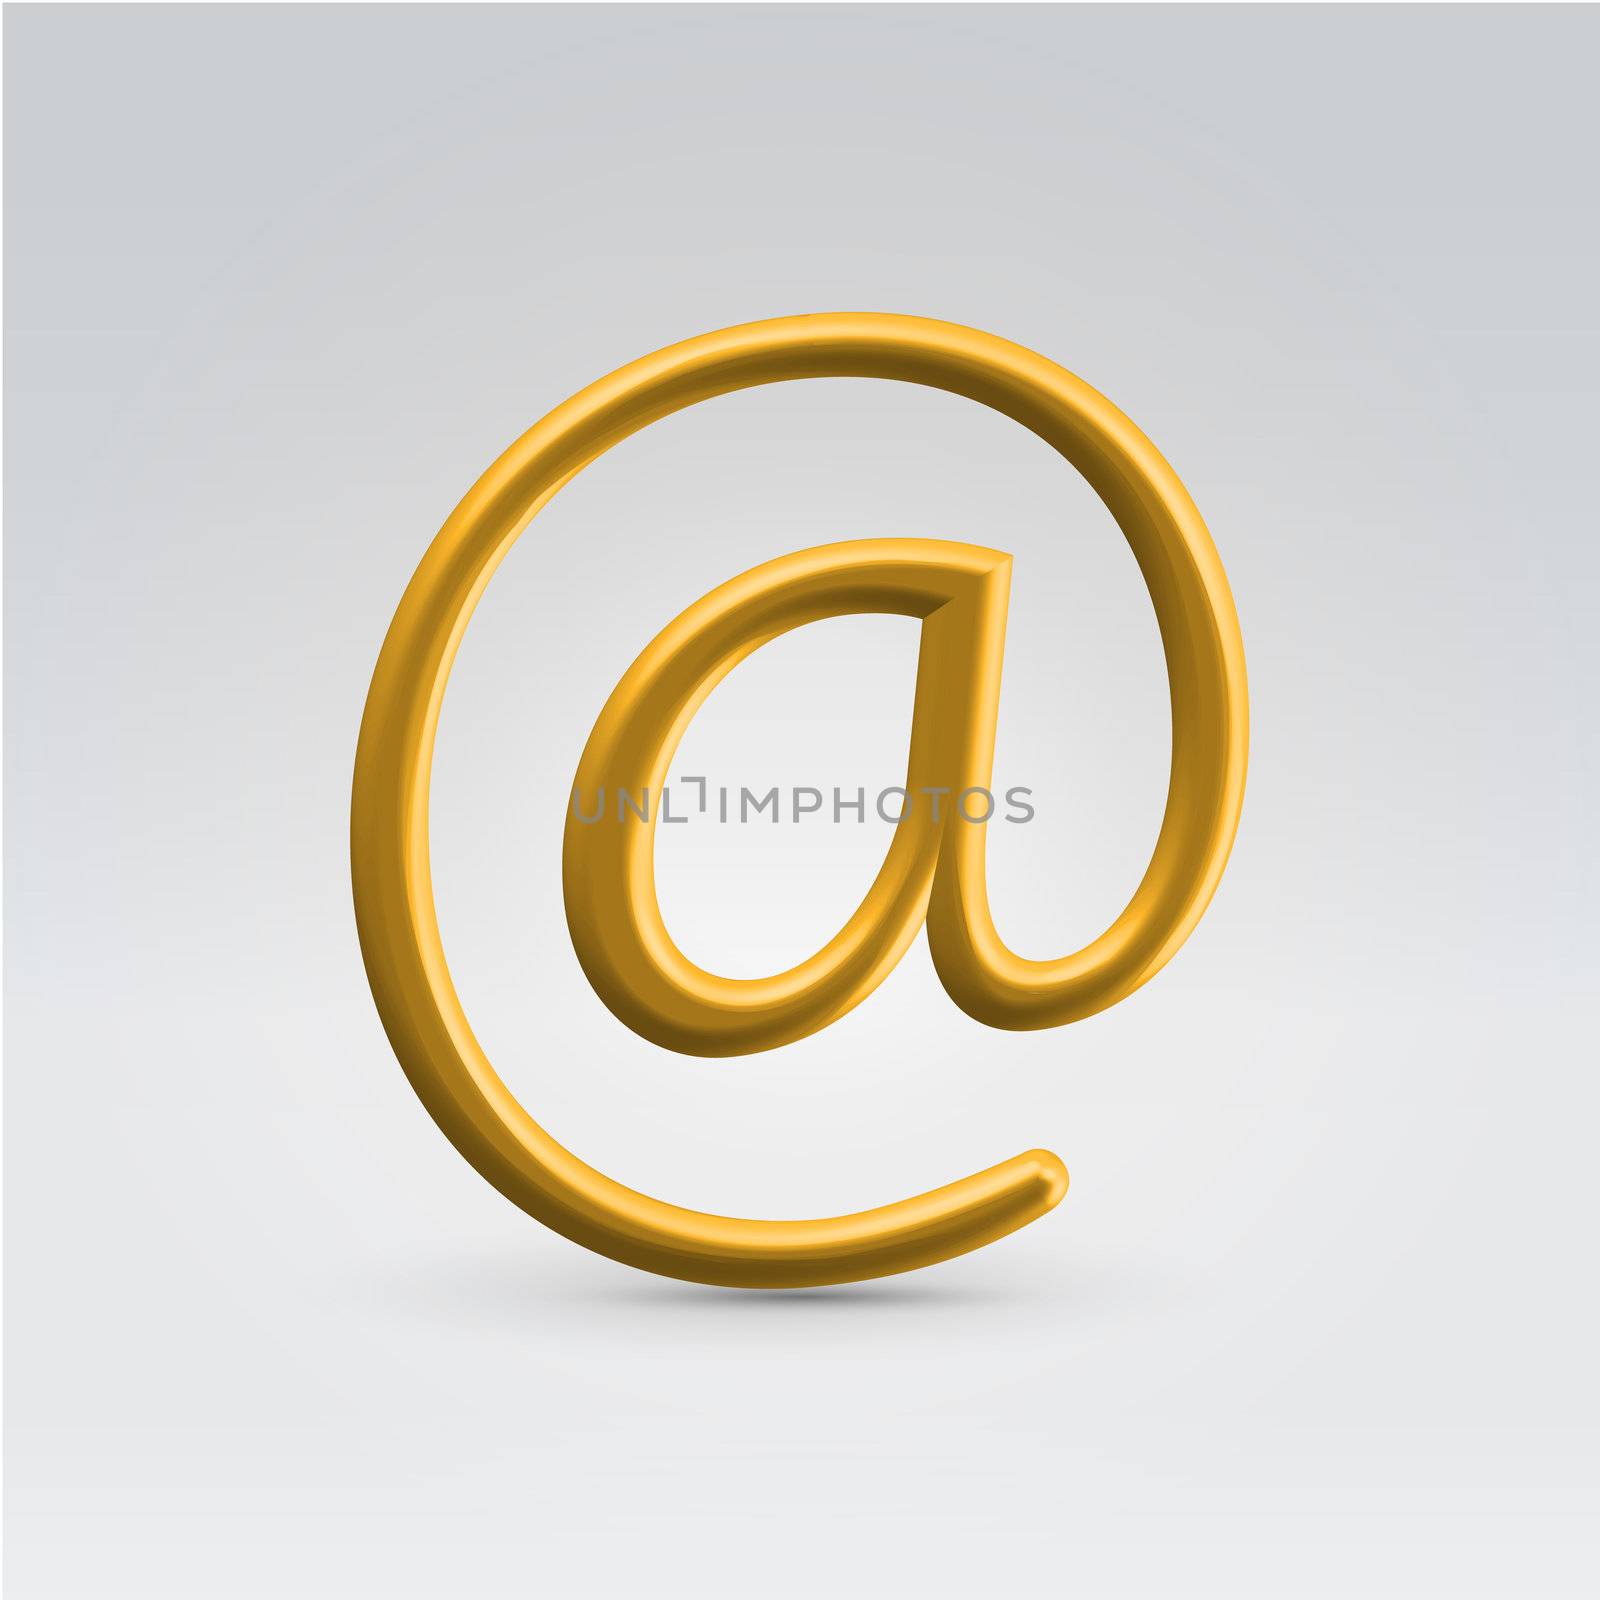 Golden shining metallic email symbol hanging in space backlit closeup studio shot